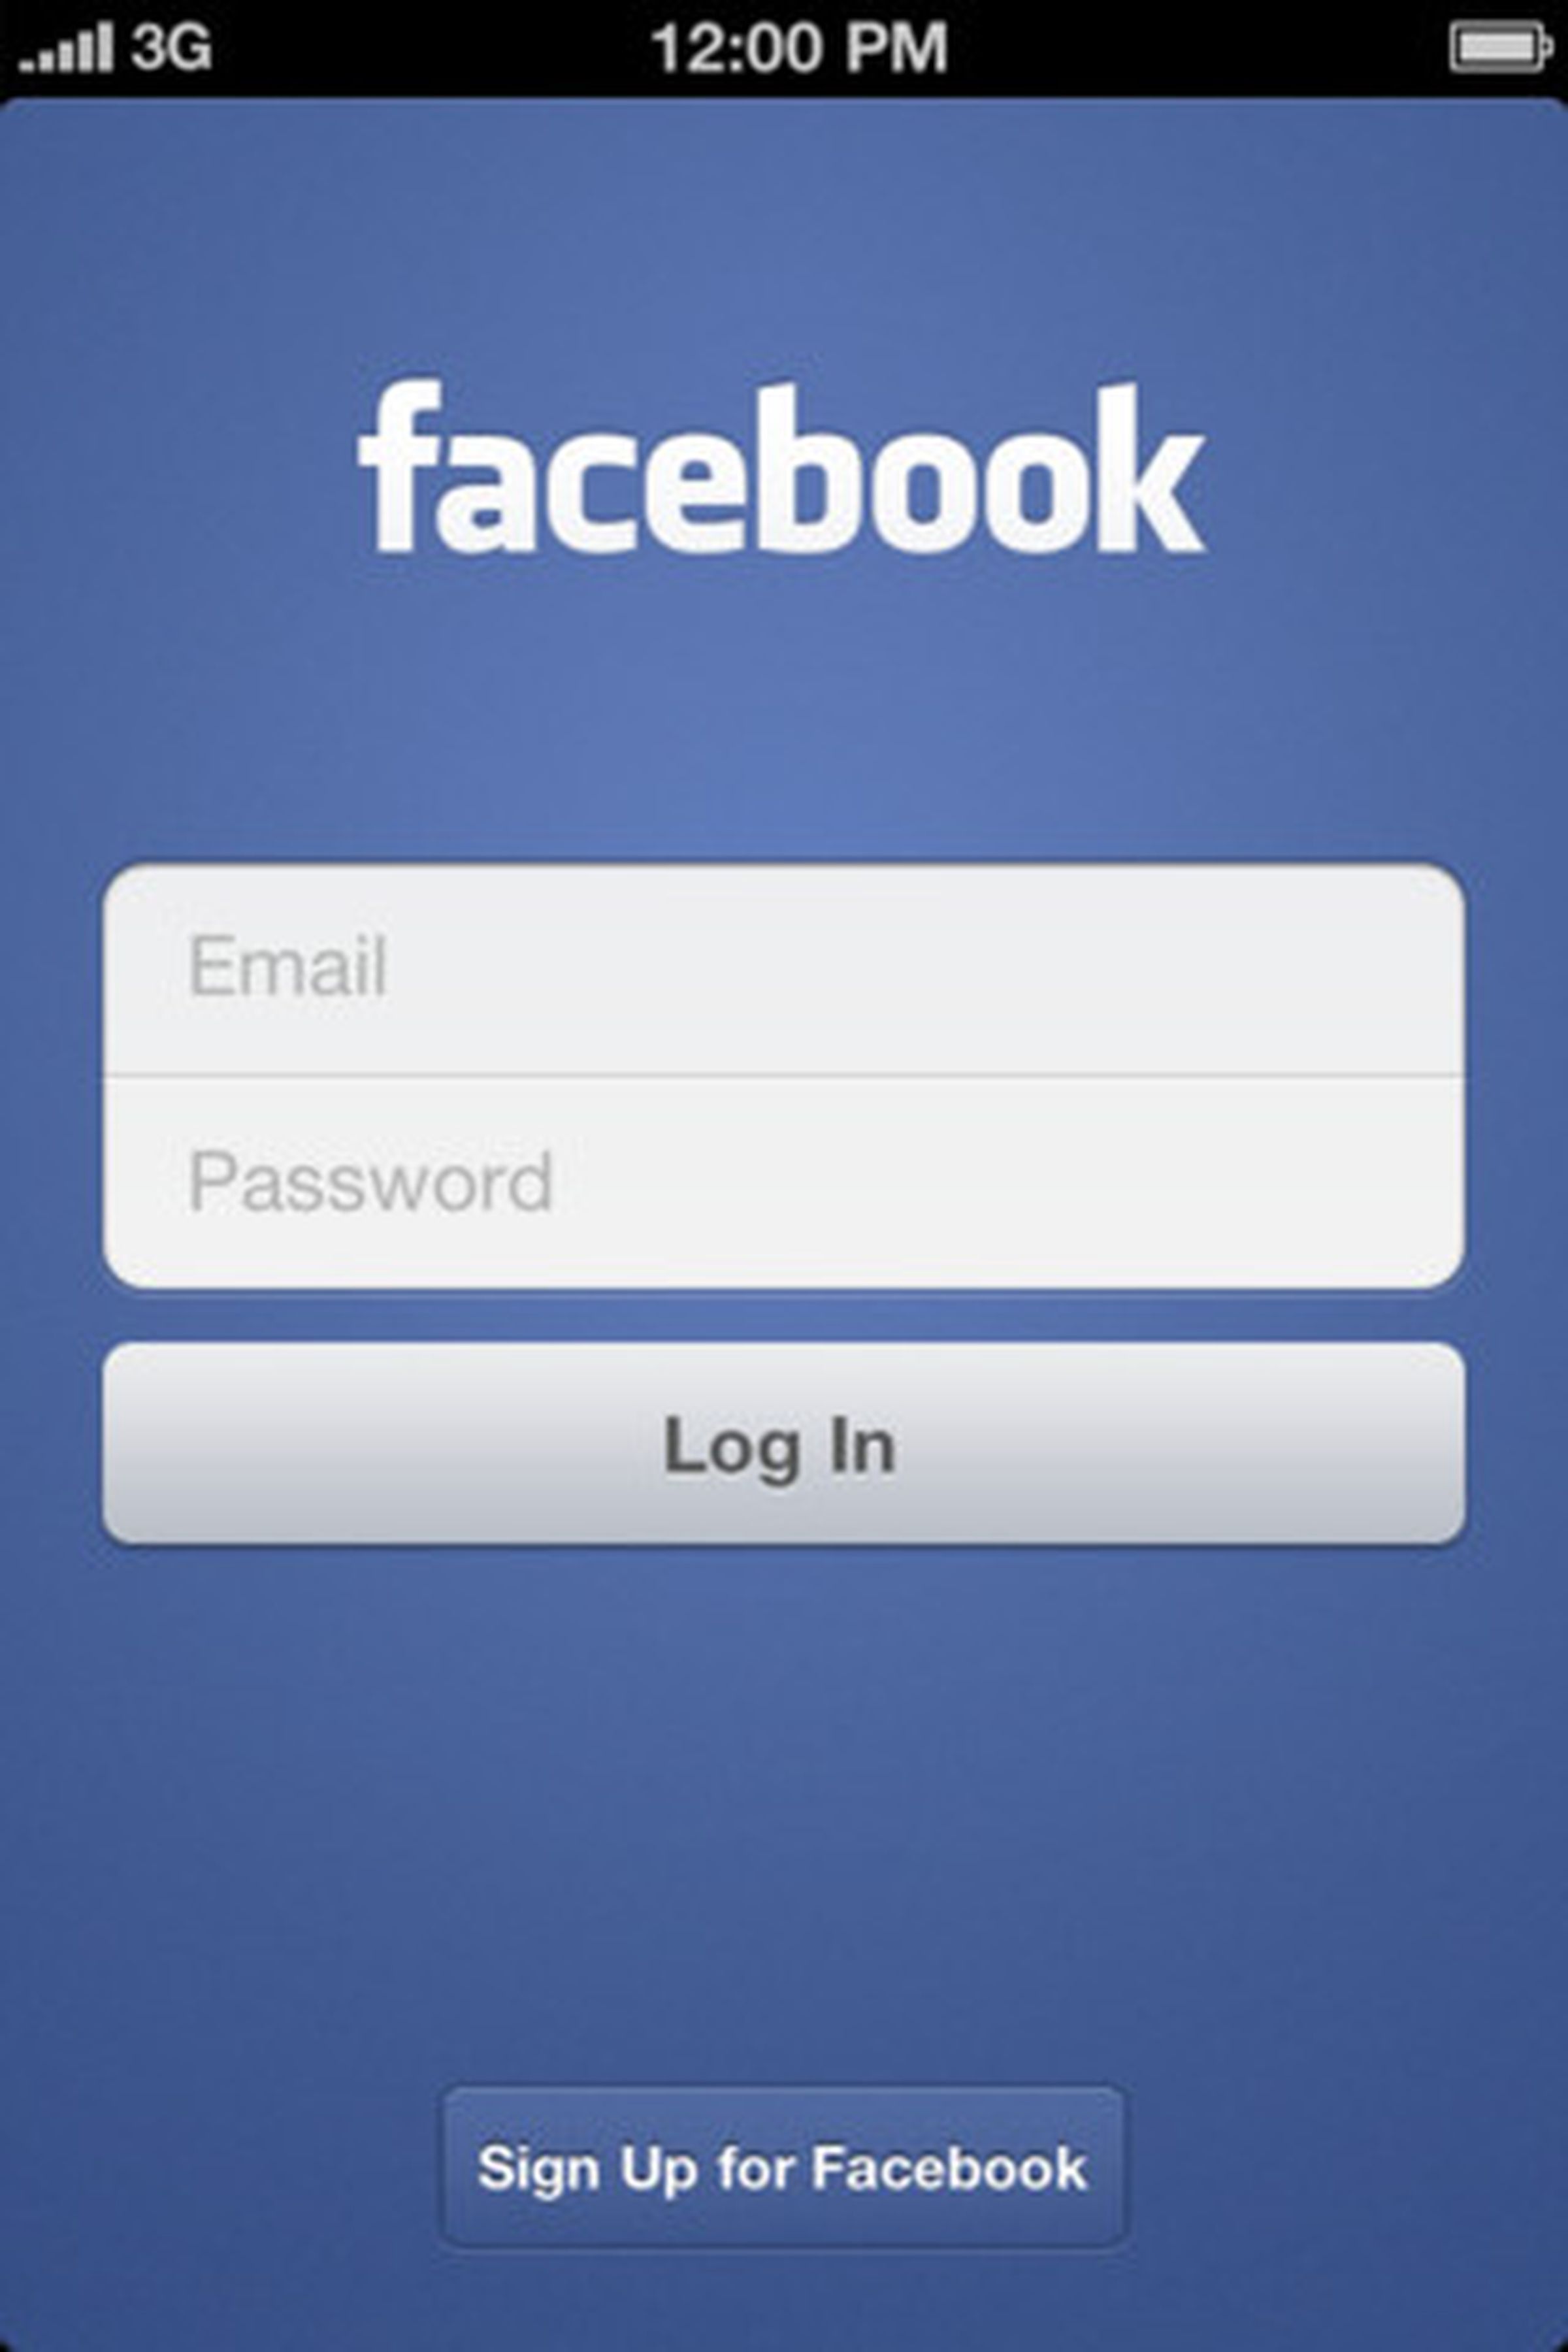 Facebook Timeline iOS app update gallery